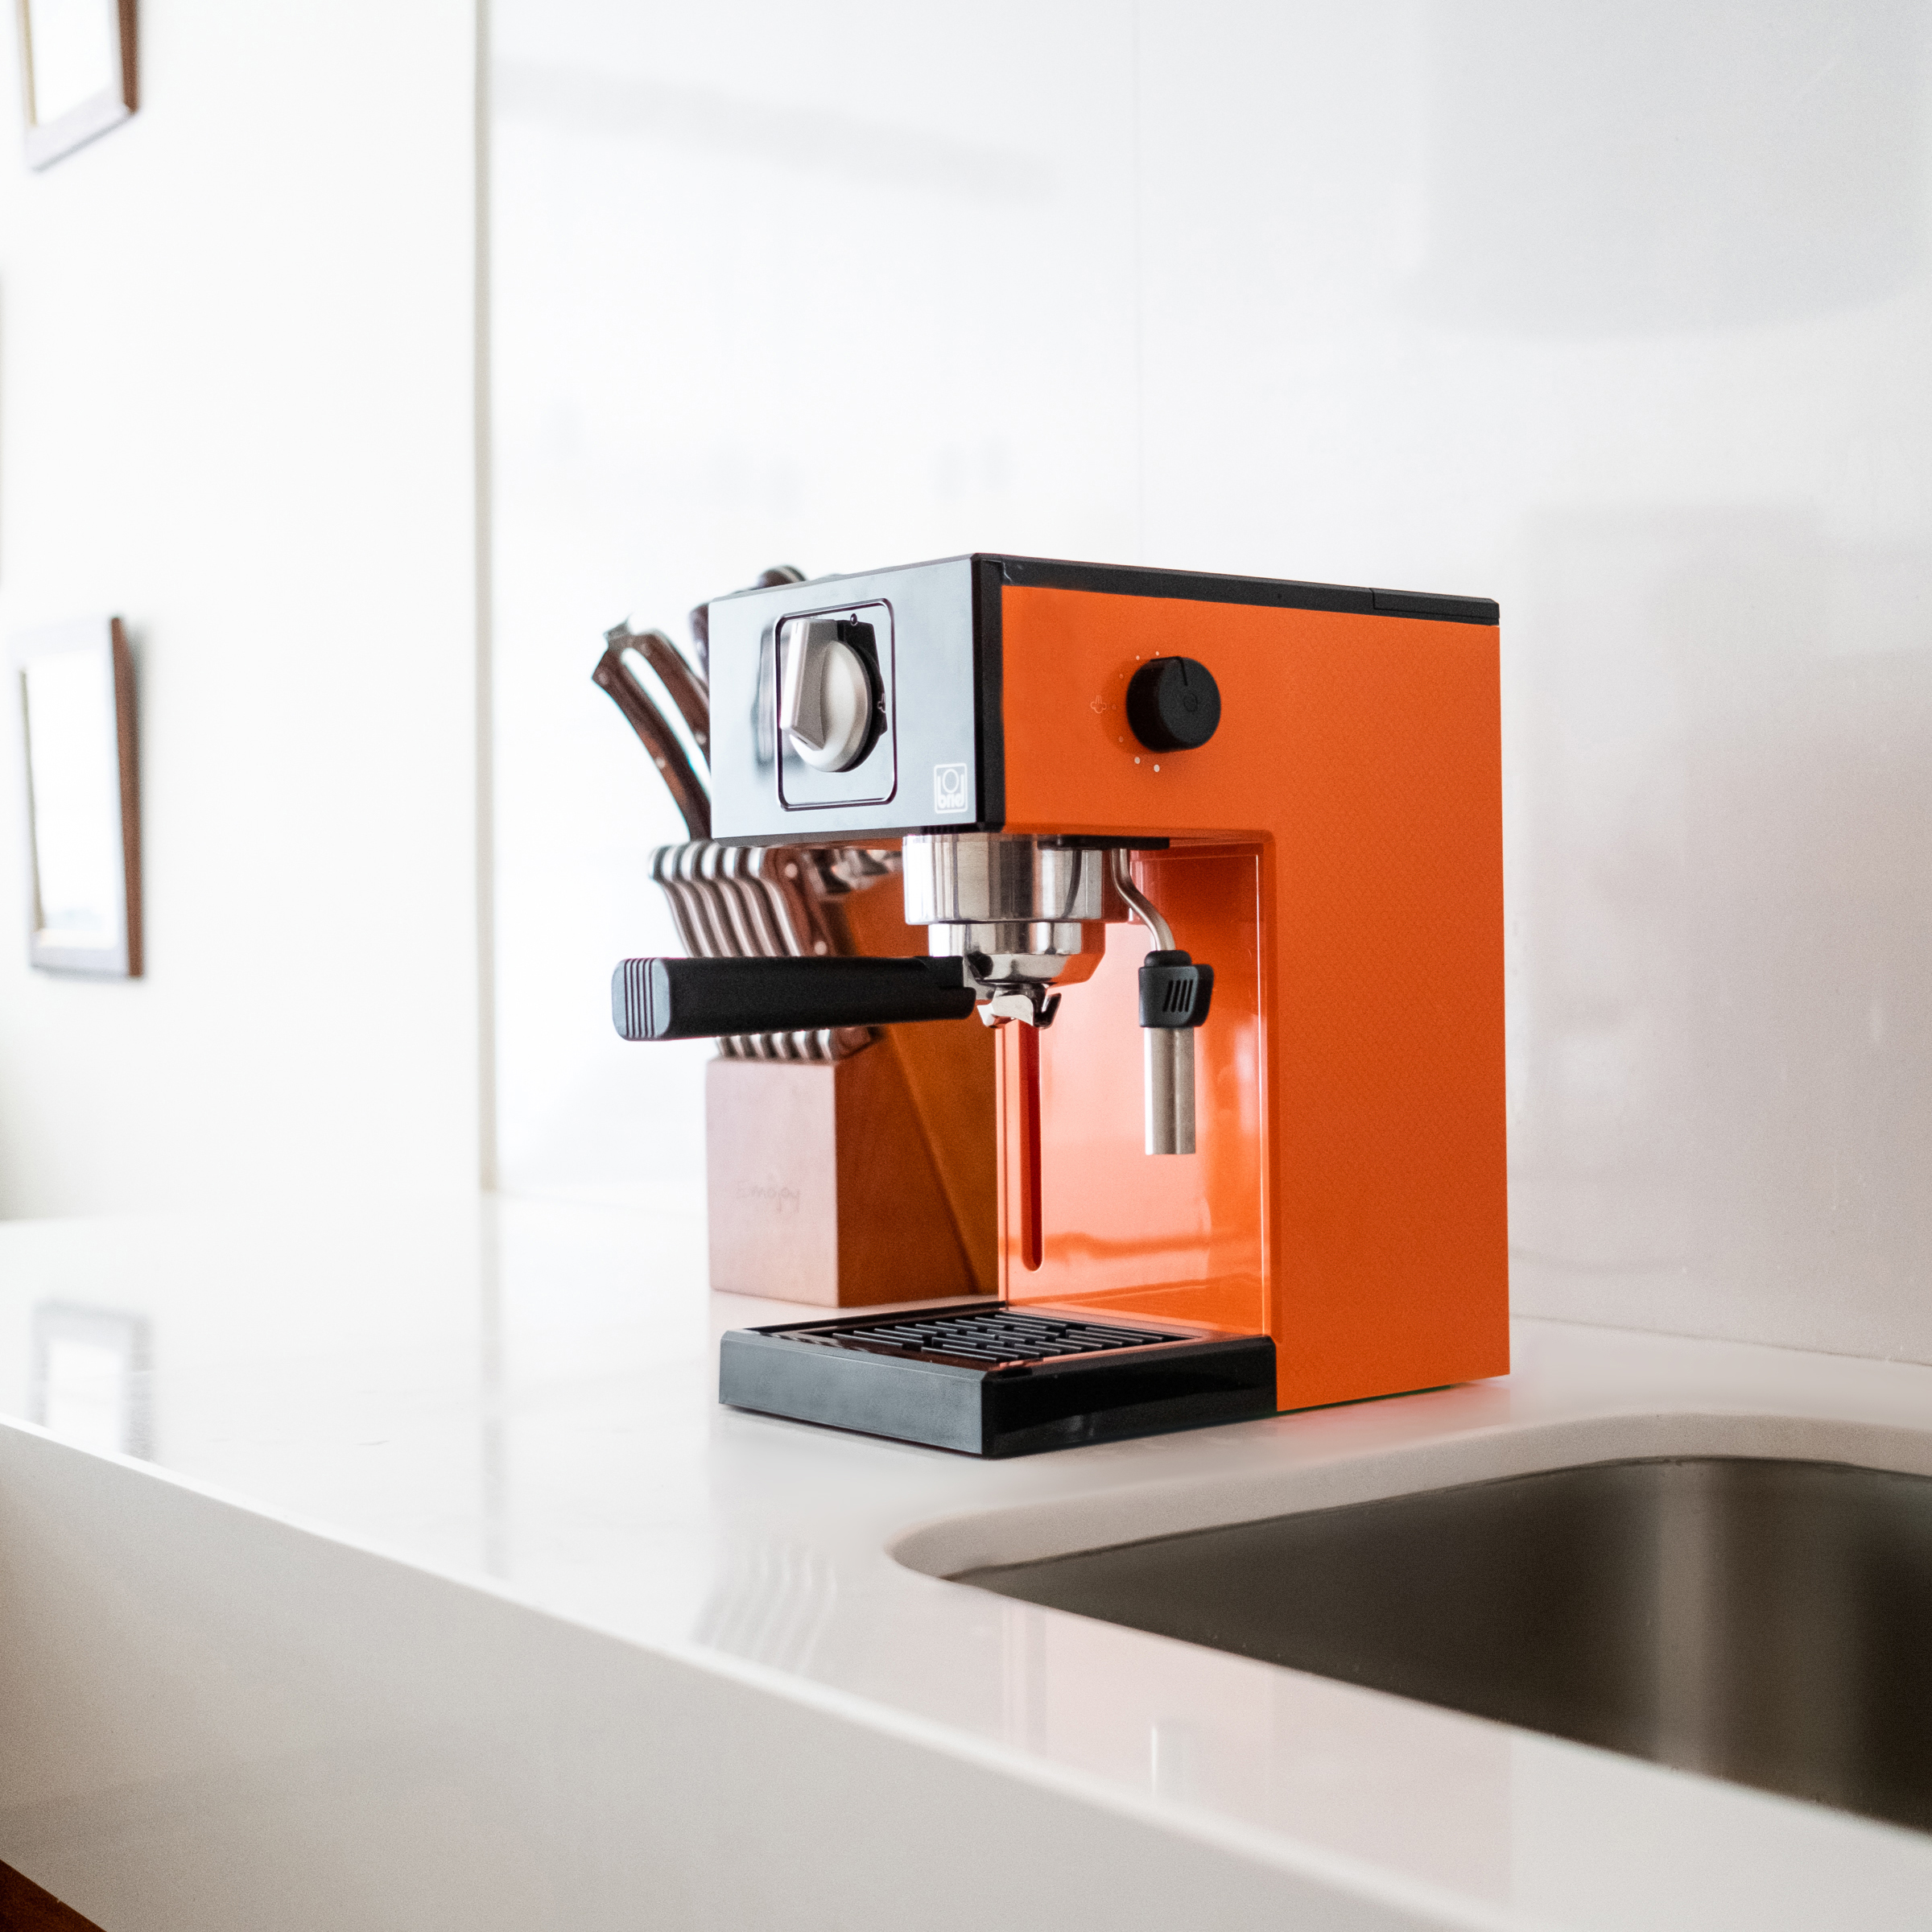 Maquina-cafe-espresso-A1-MANUAL-ORANGE-4.jpg